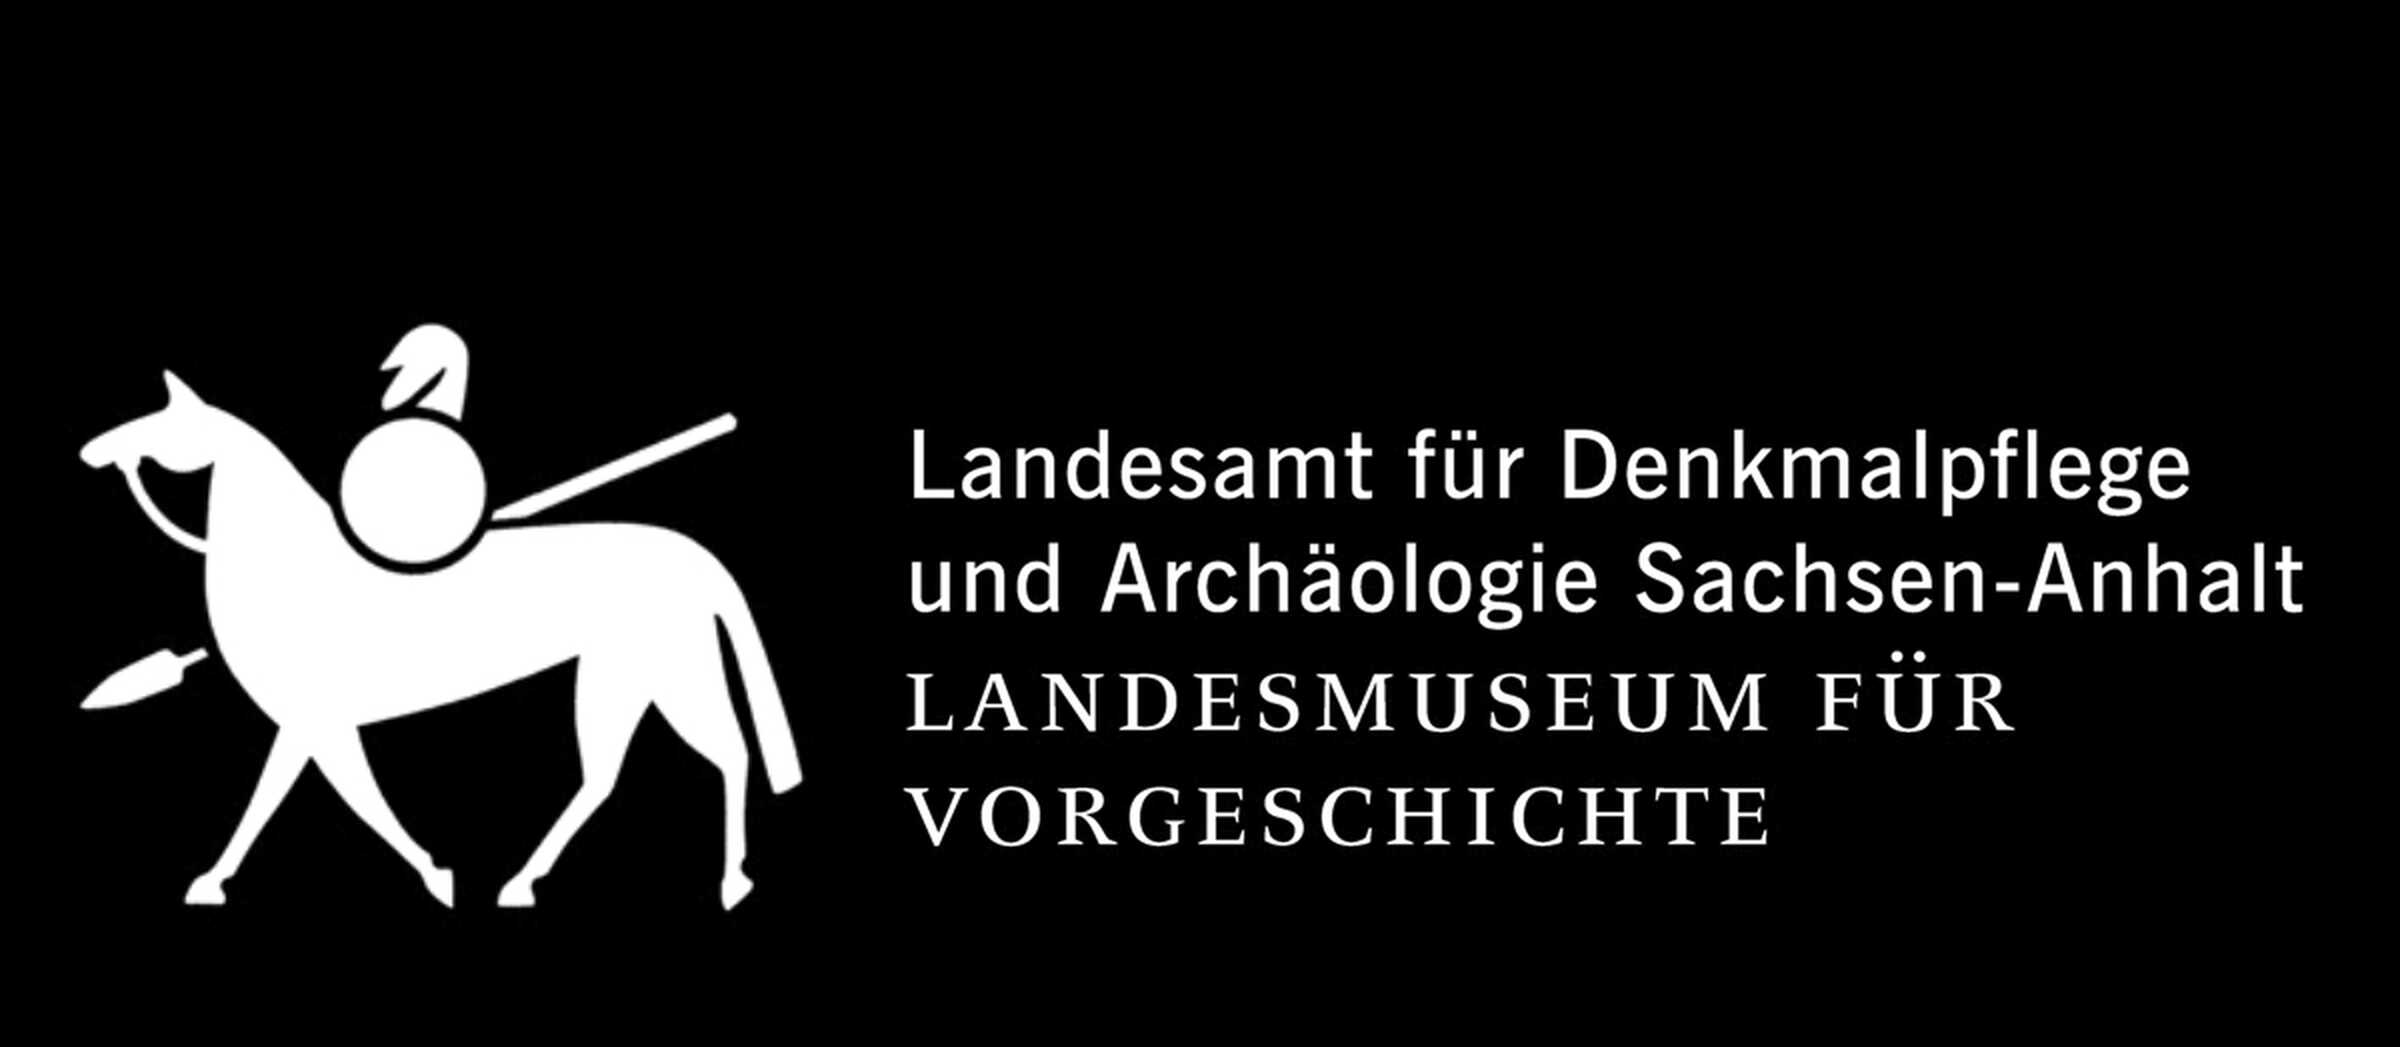 Das Logo des Landesamts für Denkmalpflege und Archäologie Sachsen-Anhalt zeigt einen Reiter mit Lanze und Schild auf einem Pferd.